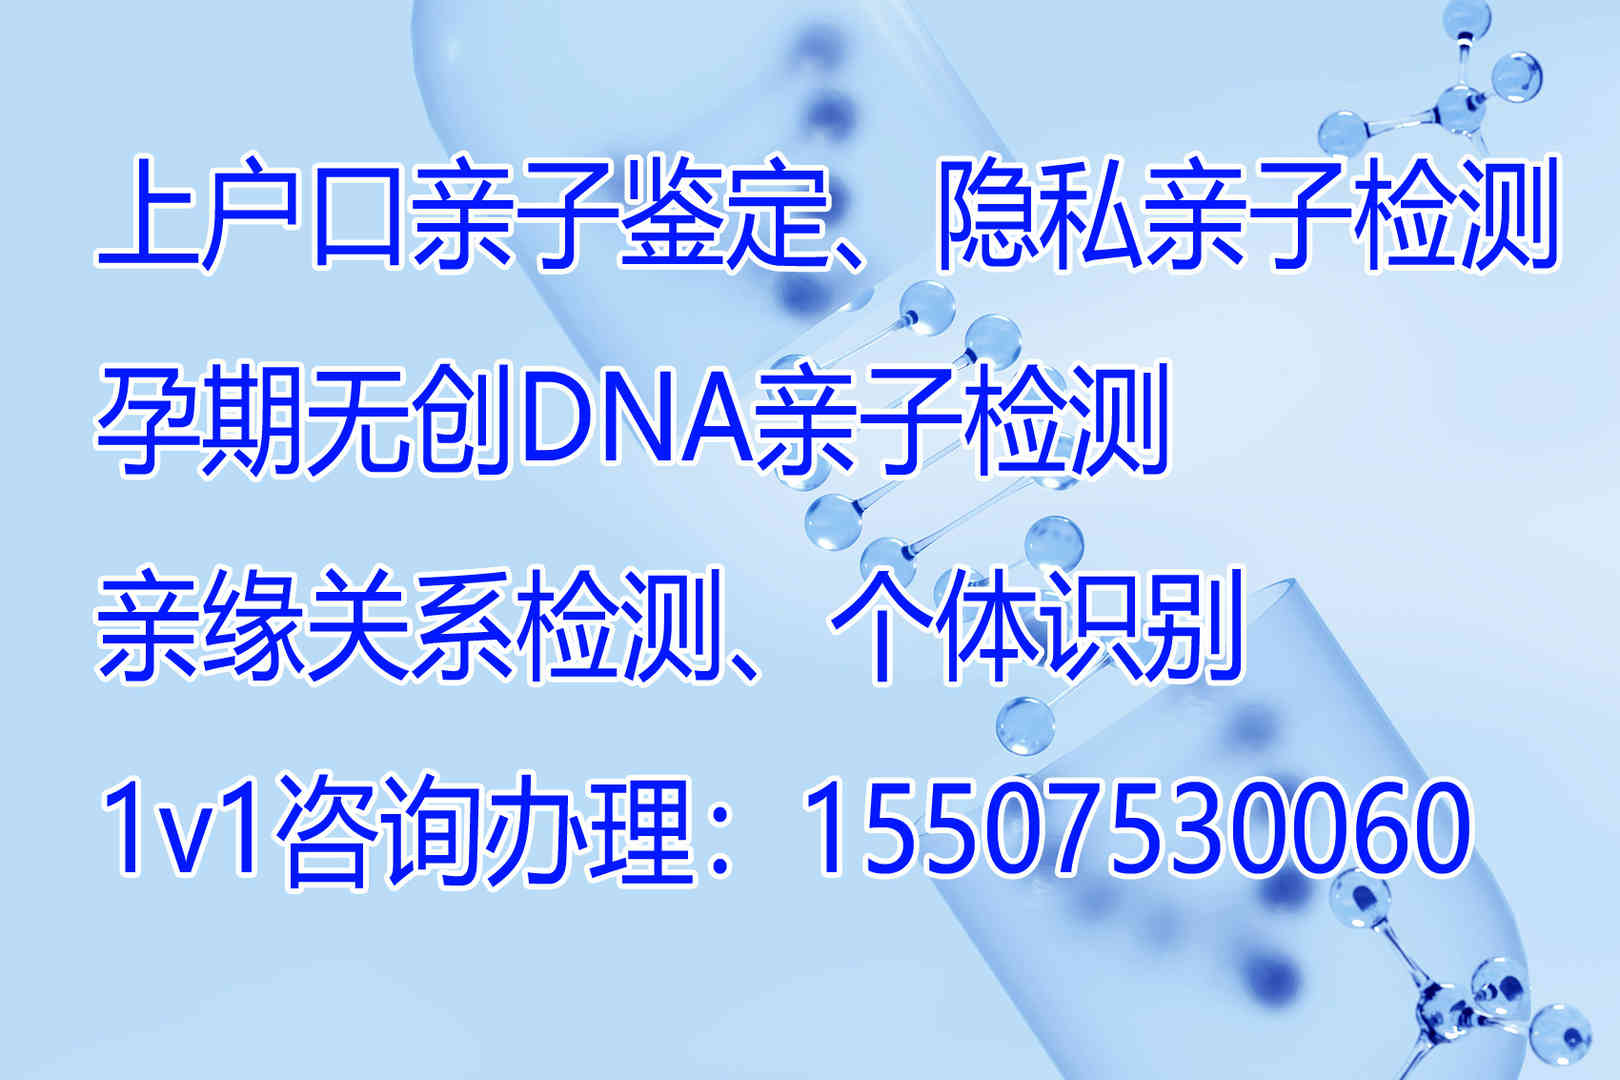 DNA正文图配图片1 拷贝.jpg